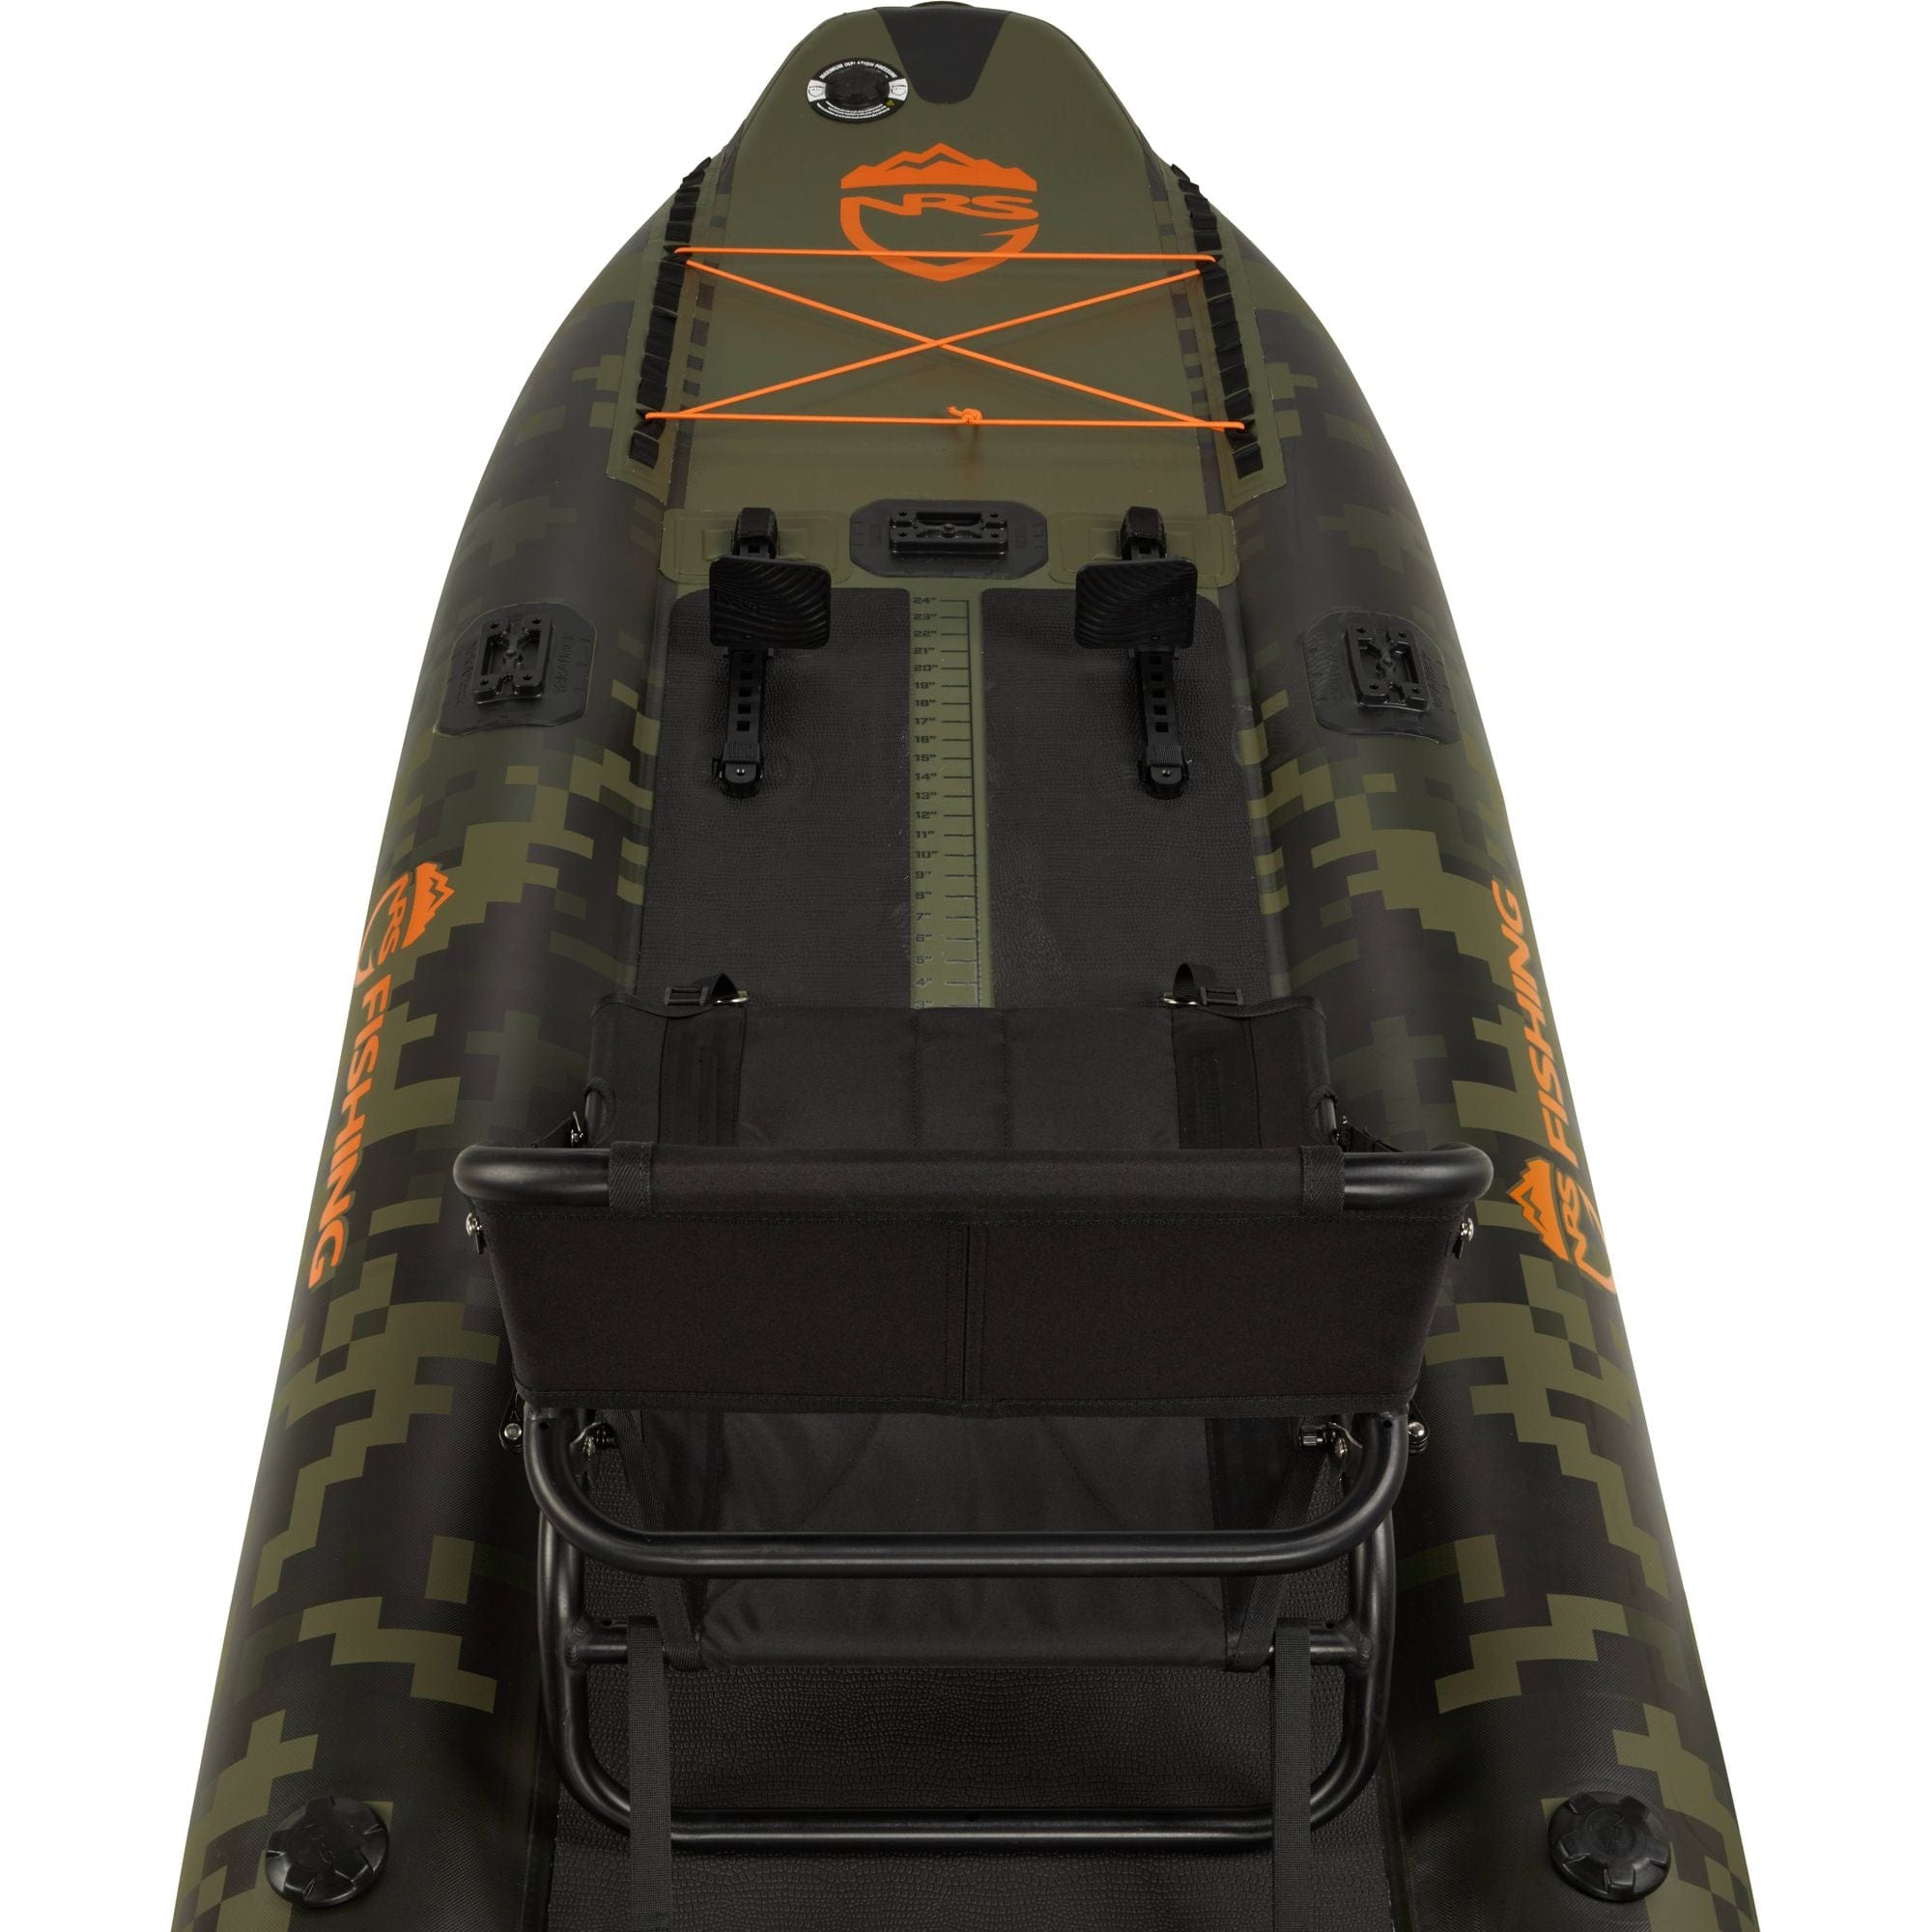 NRS Kuda 106 Inflatable Kayak